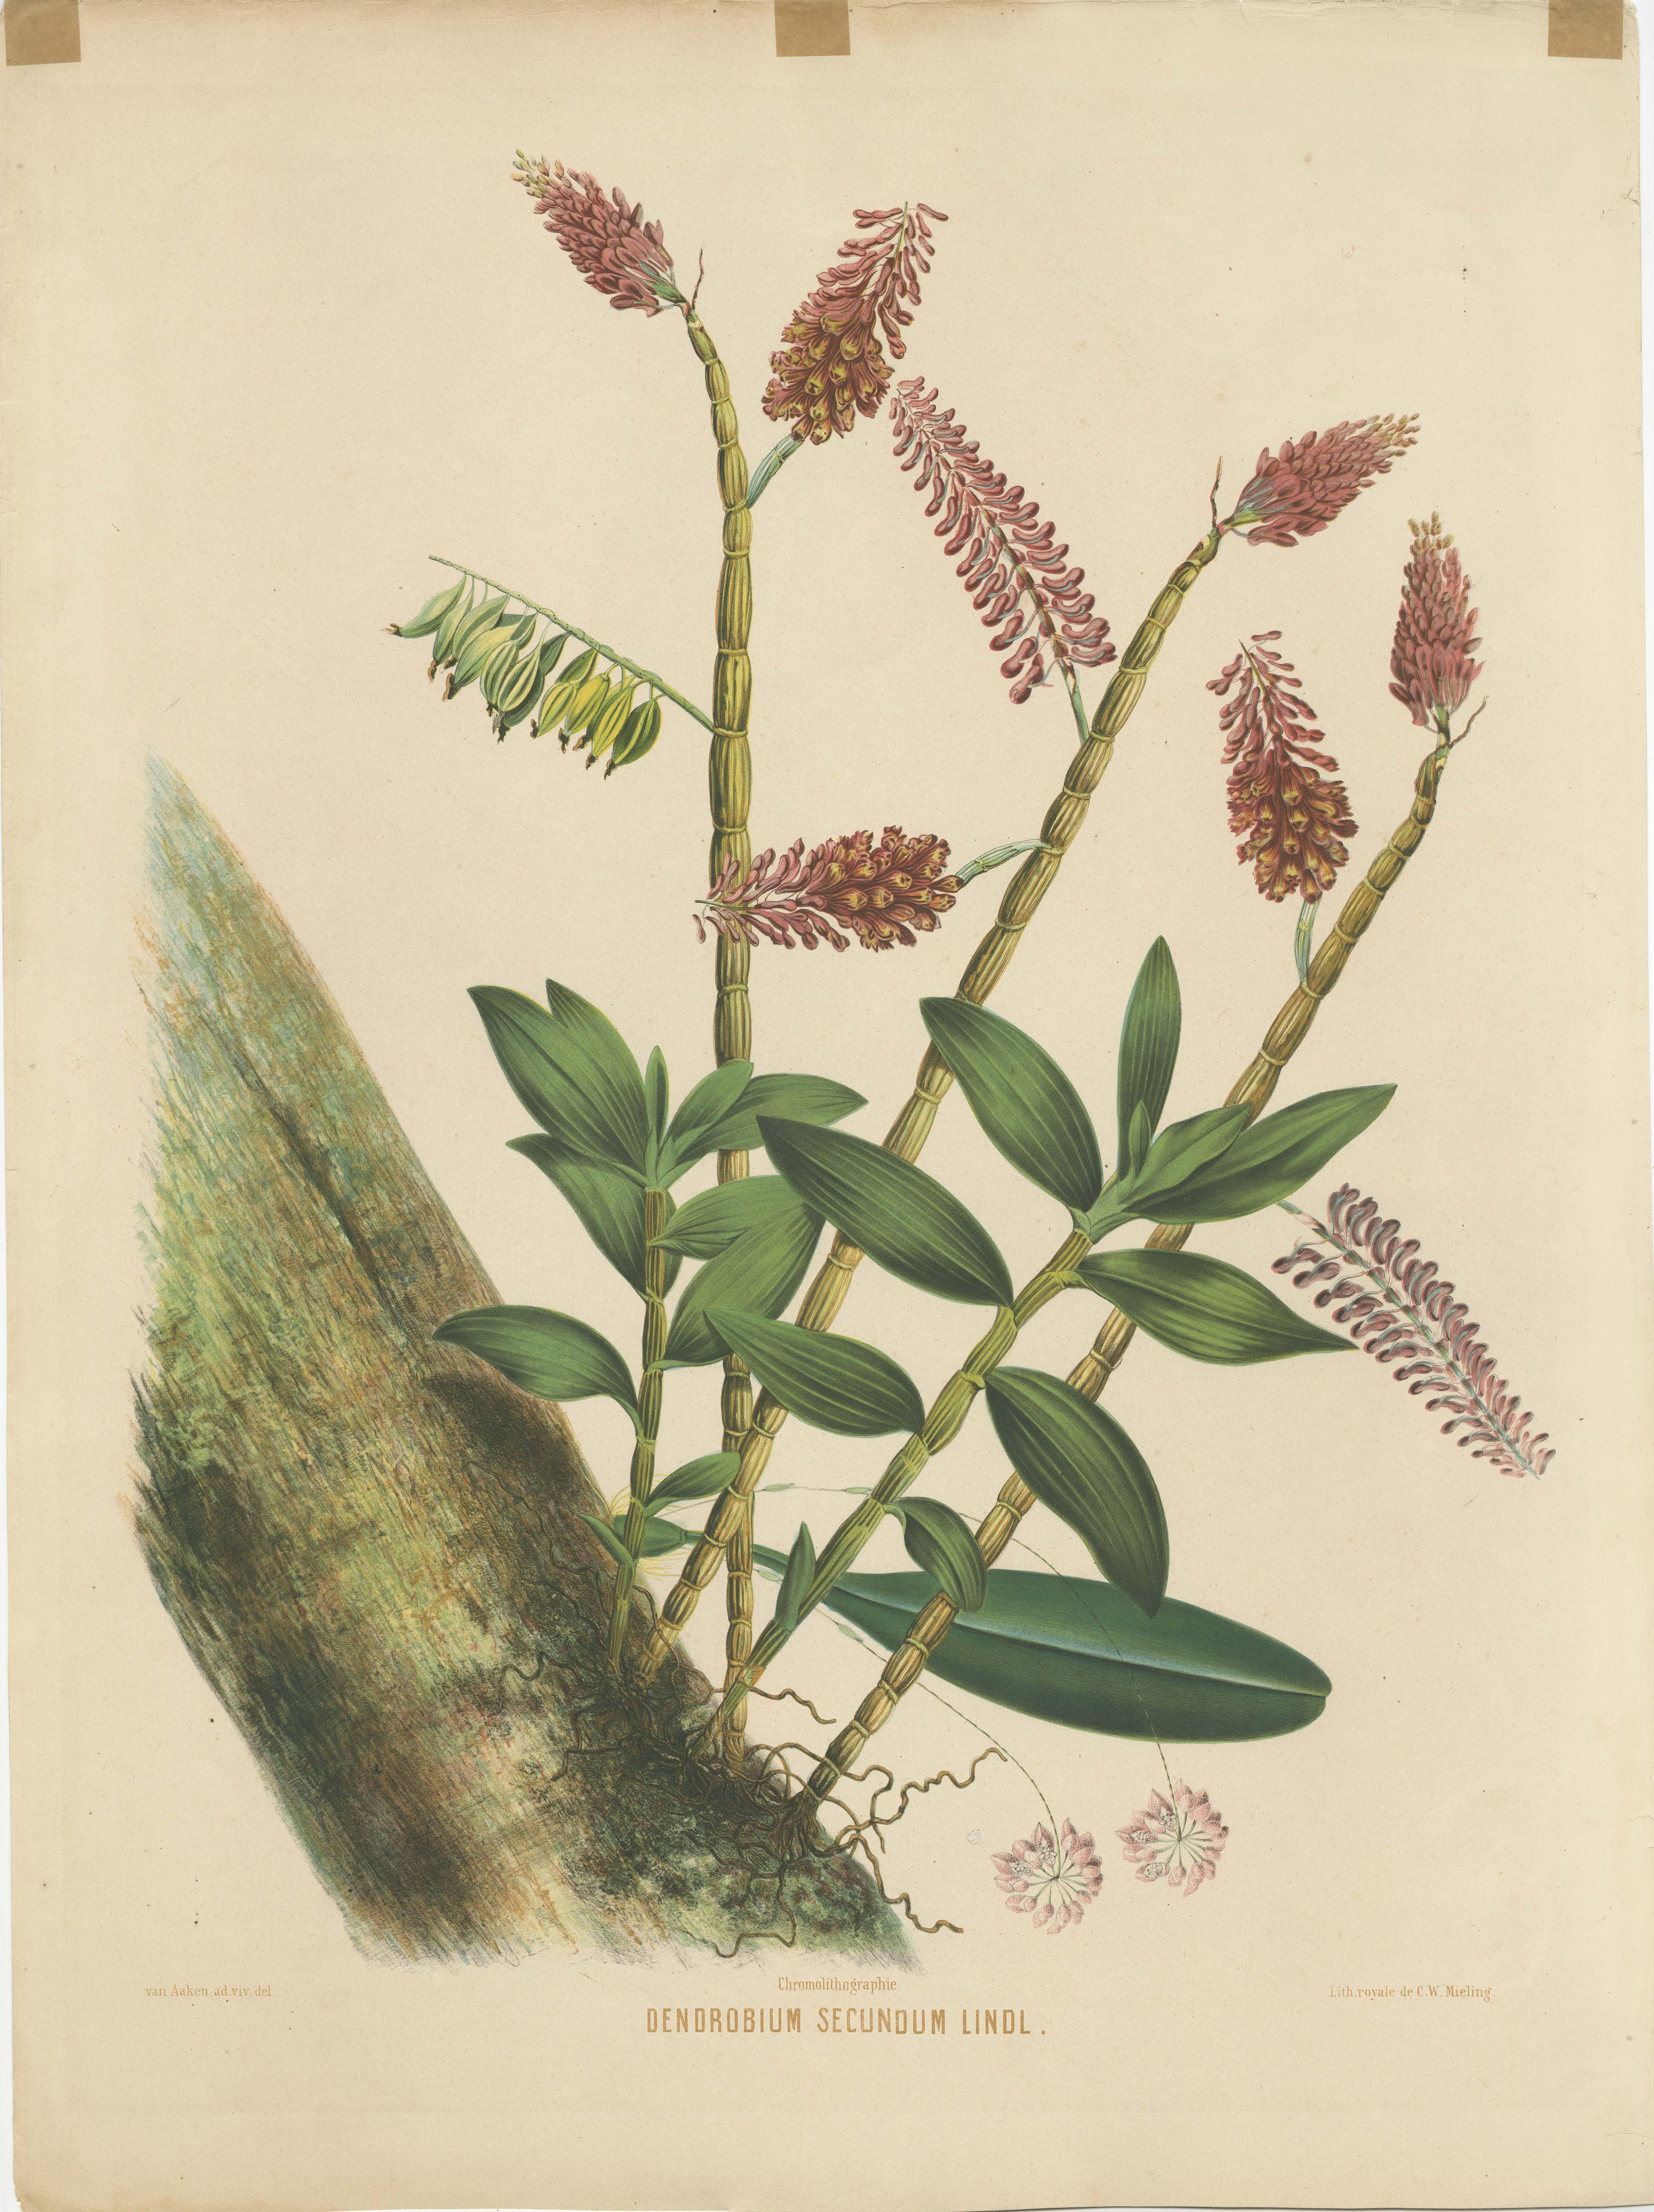 Il s'agit d'une grande estampe botanique chromolithographique représentant l'espèce d'orchidée Dendrobium secundum Lindl. Elle est tirée de la publication du XIXe siècle 